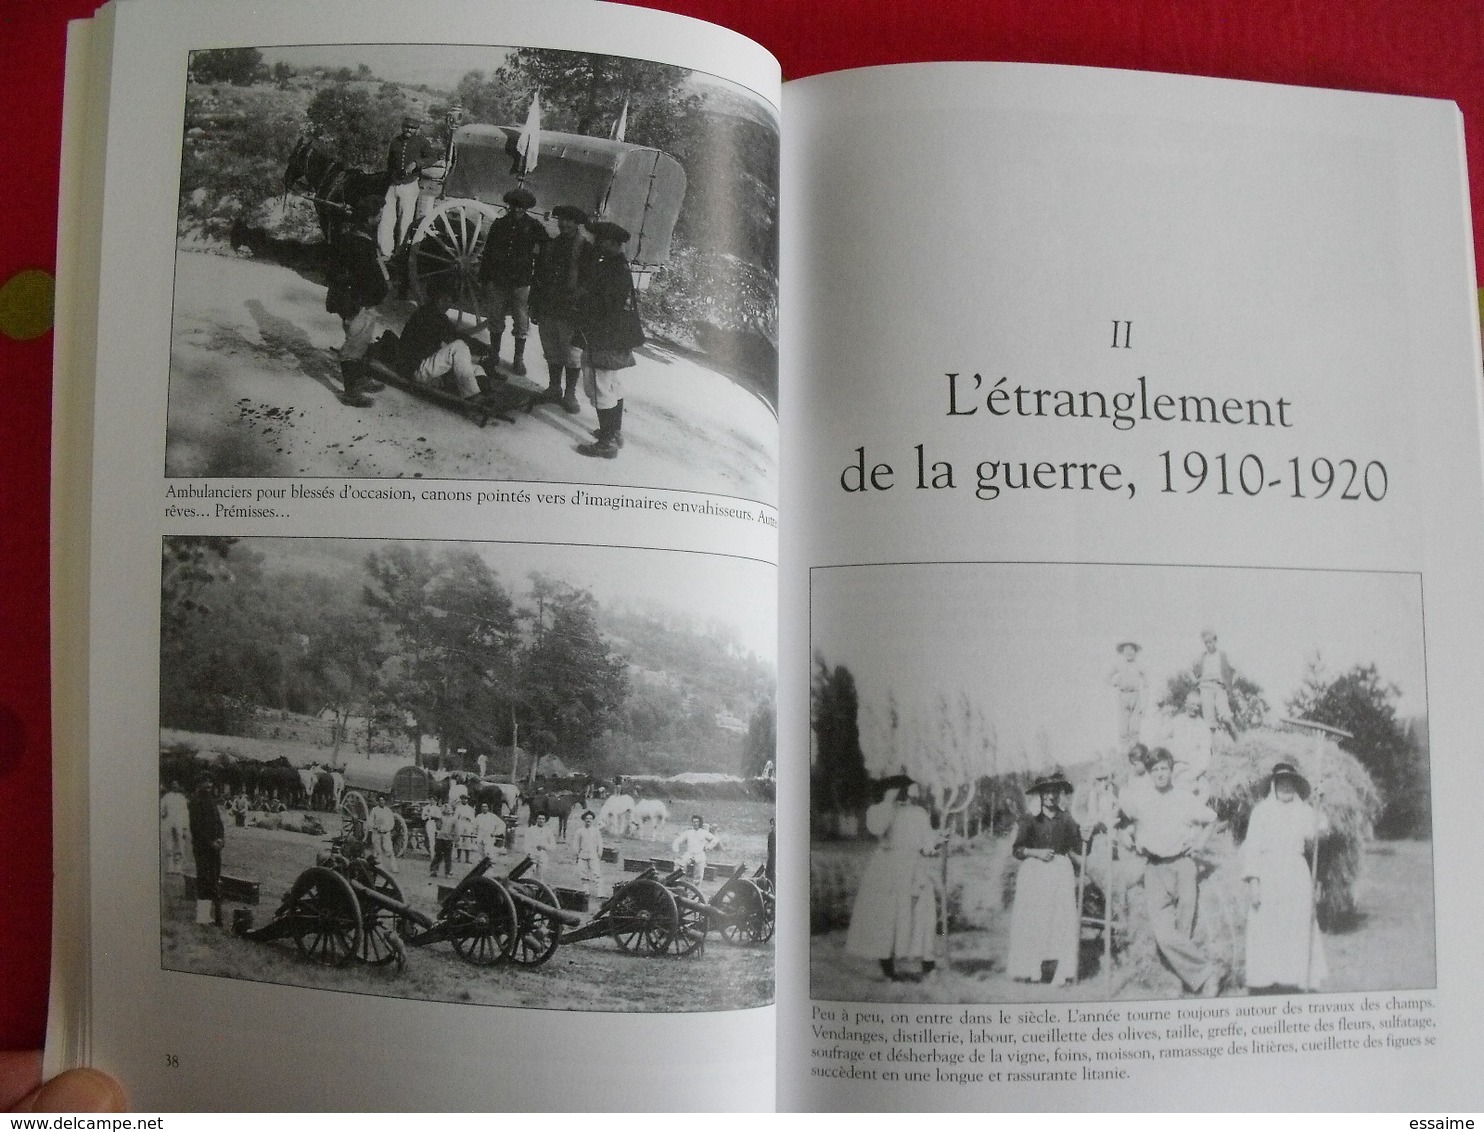 Valbonne. Alpes-maritimes Provence. Mémoire en images. éditions Alan Sutton. 2000. cartes postales photos